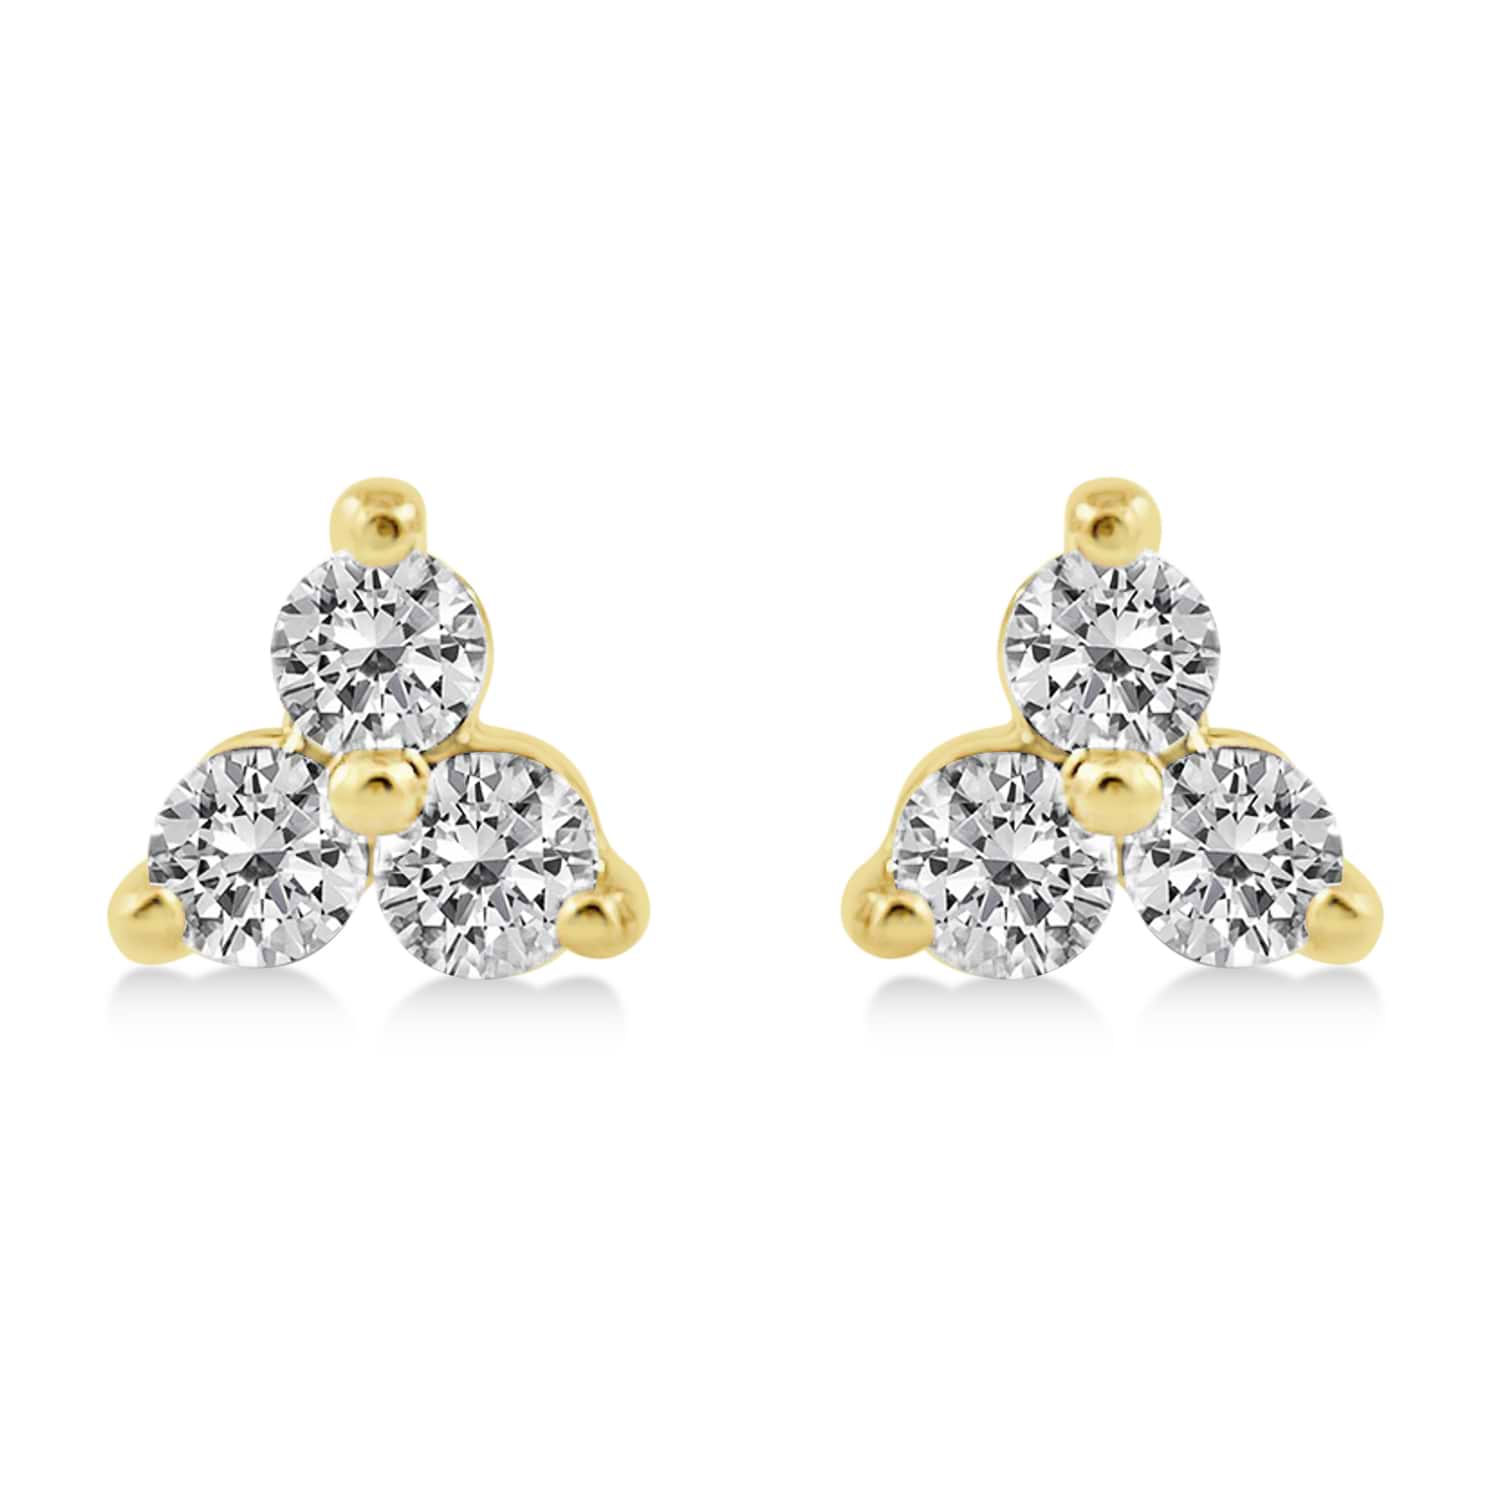 Diamond Three-Stone Triangular Earrings 14k Yellow Gold (0.25ct)